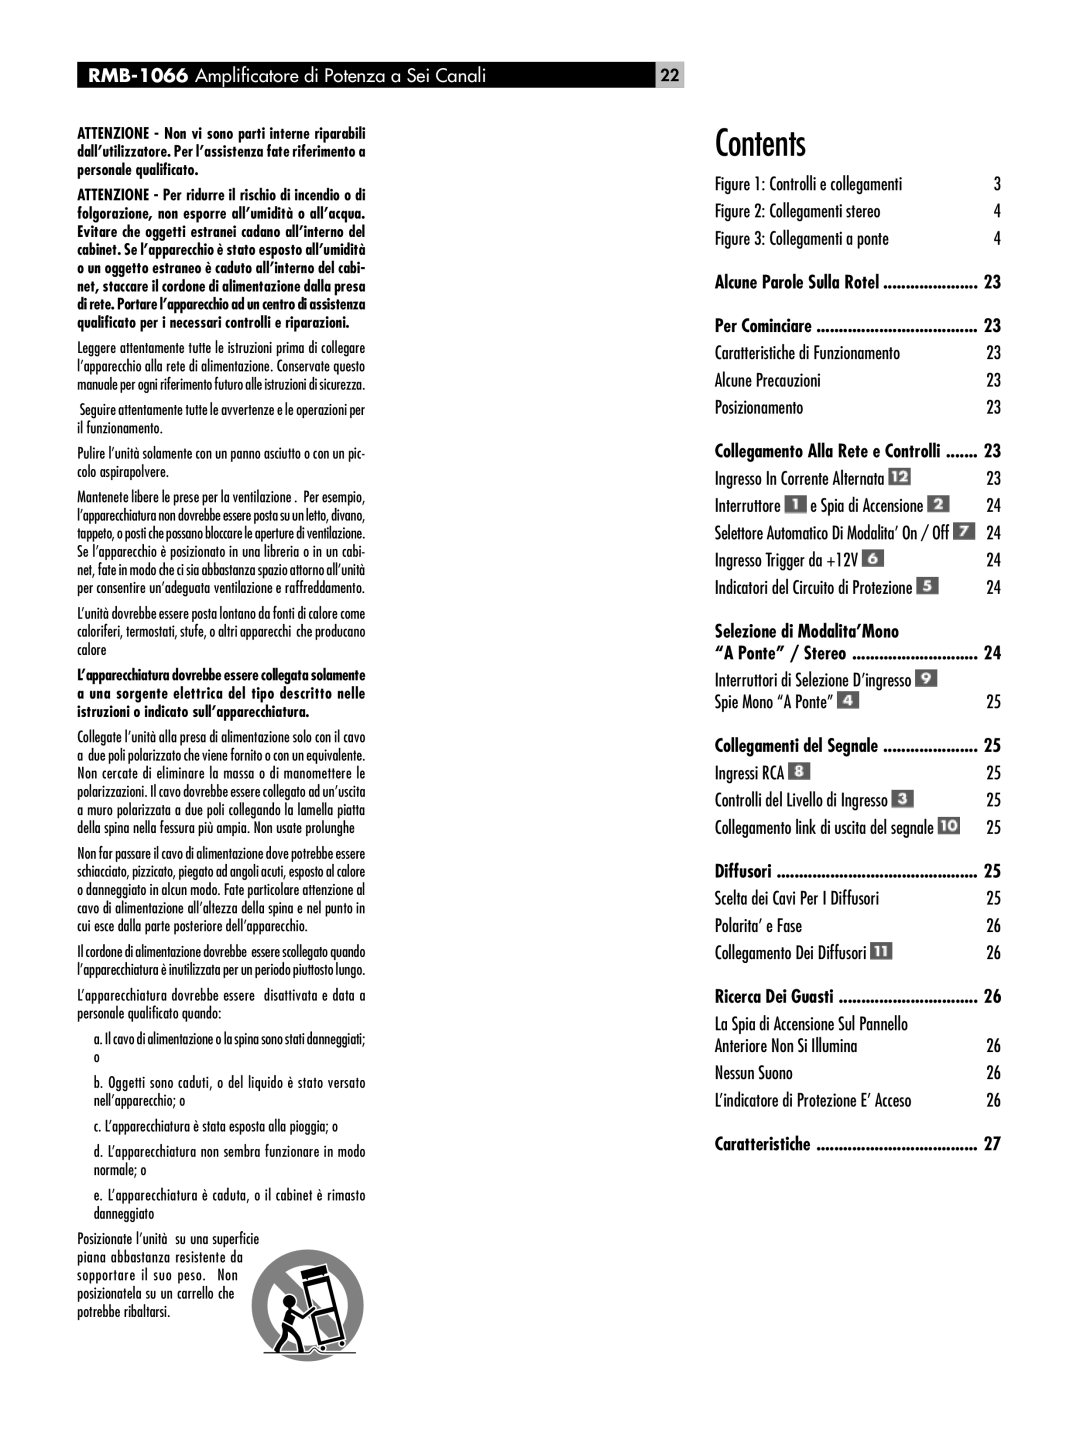 Rotel owner manual Contents, RMB-1066 Amplificatore di Potenza a Sei Canali, Selezione di Modalita’Mono 